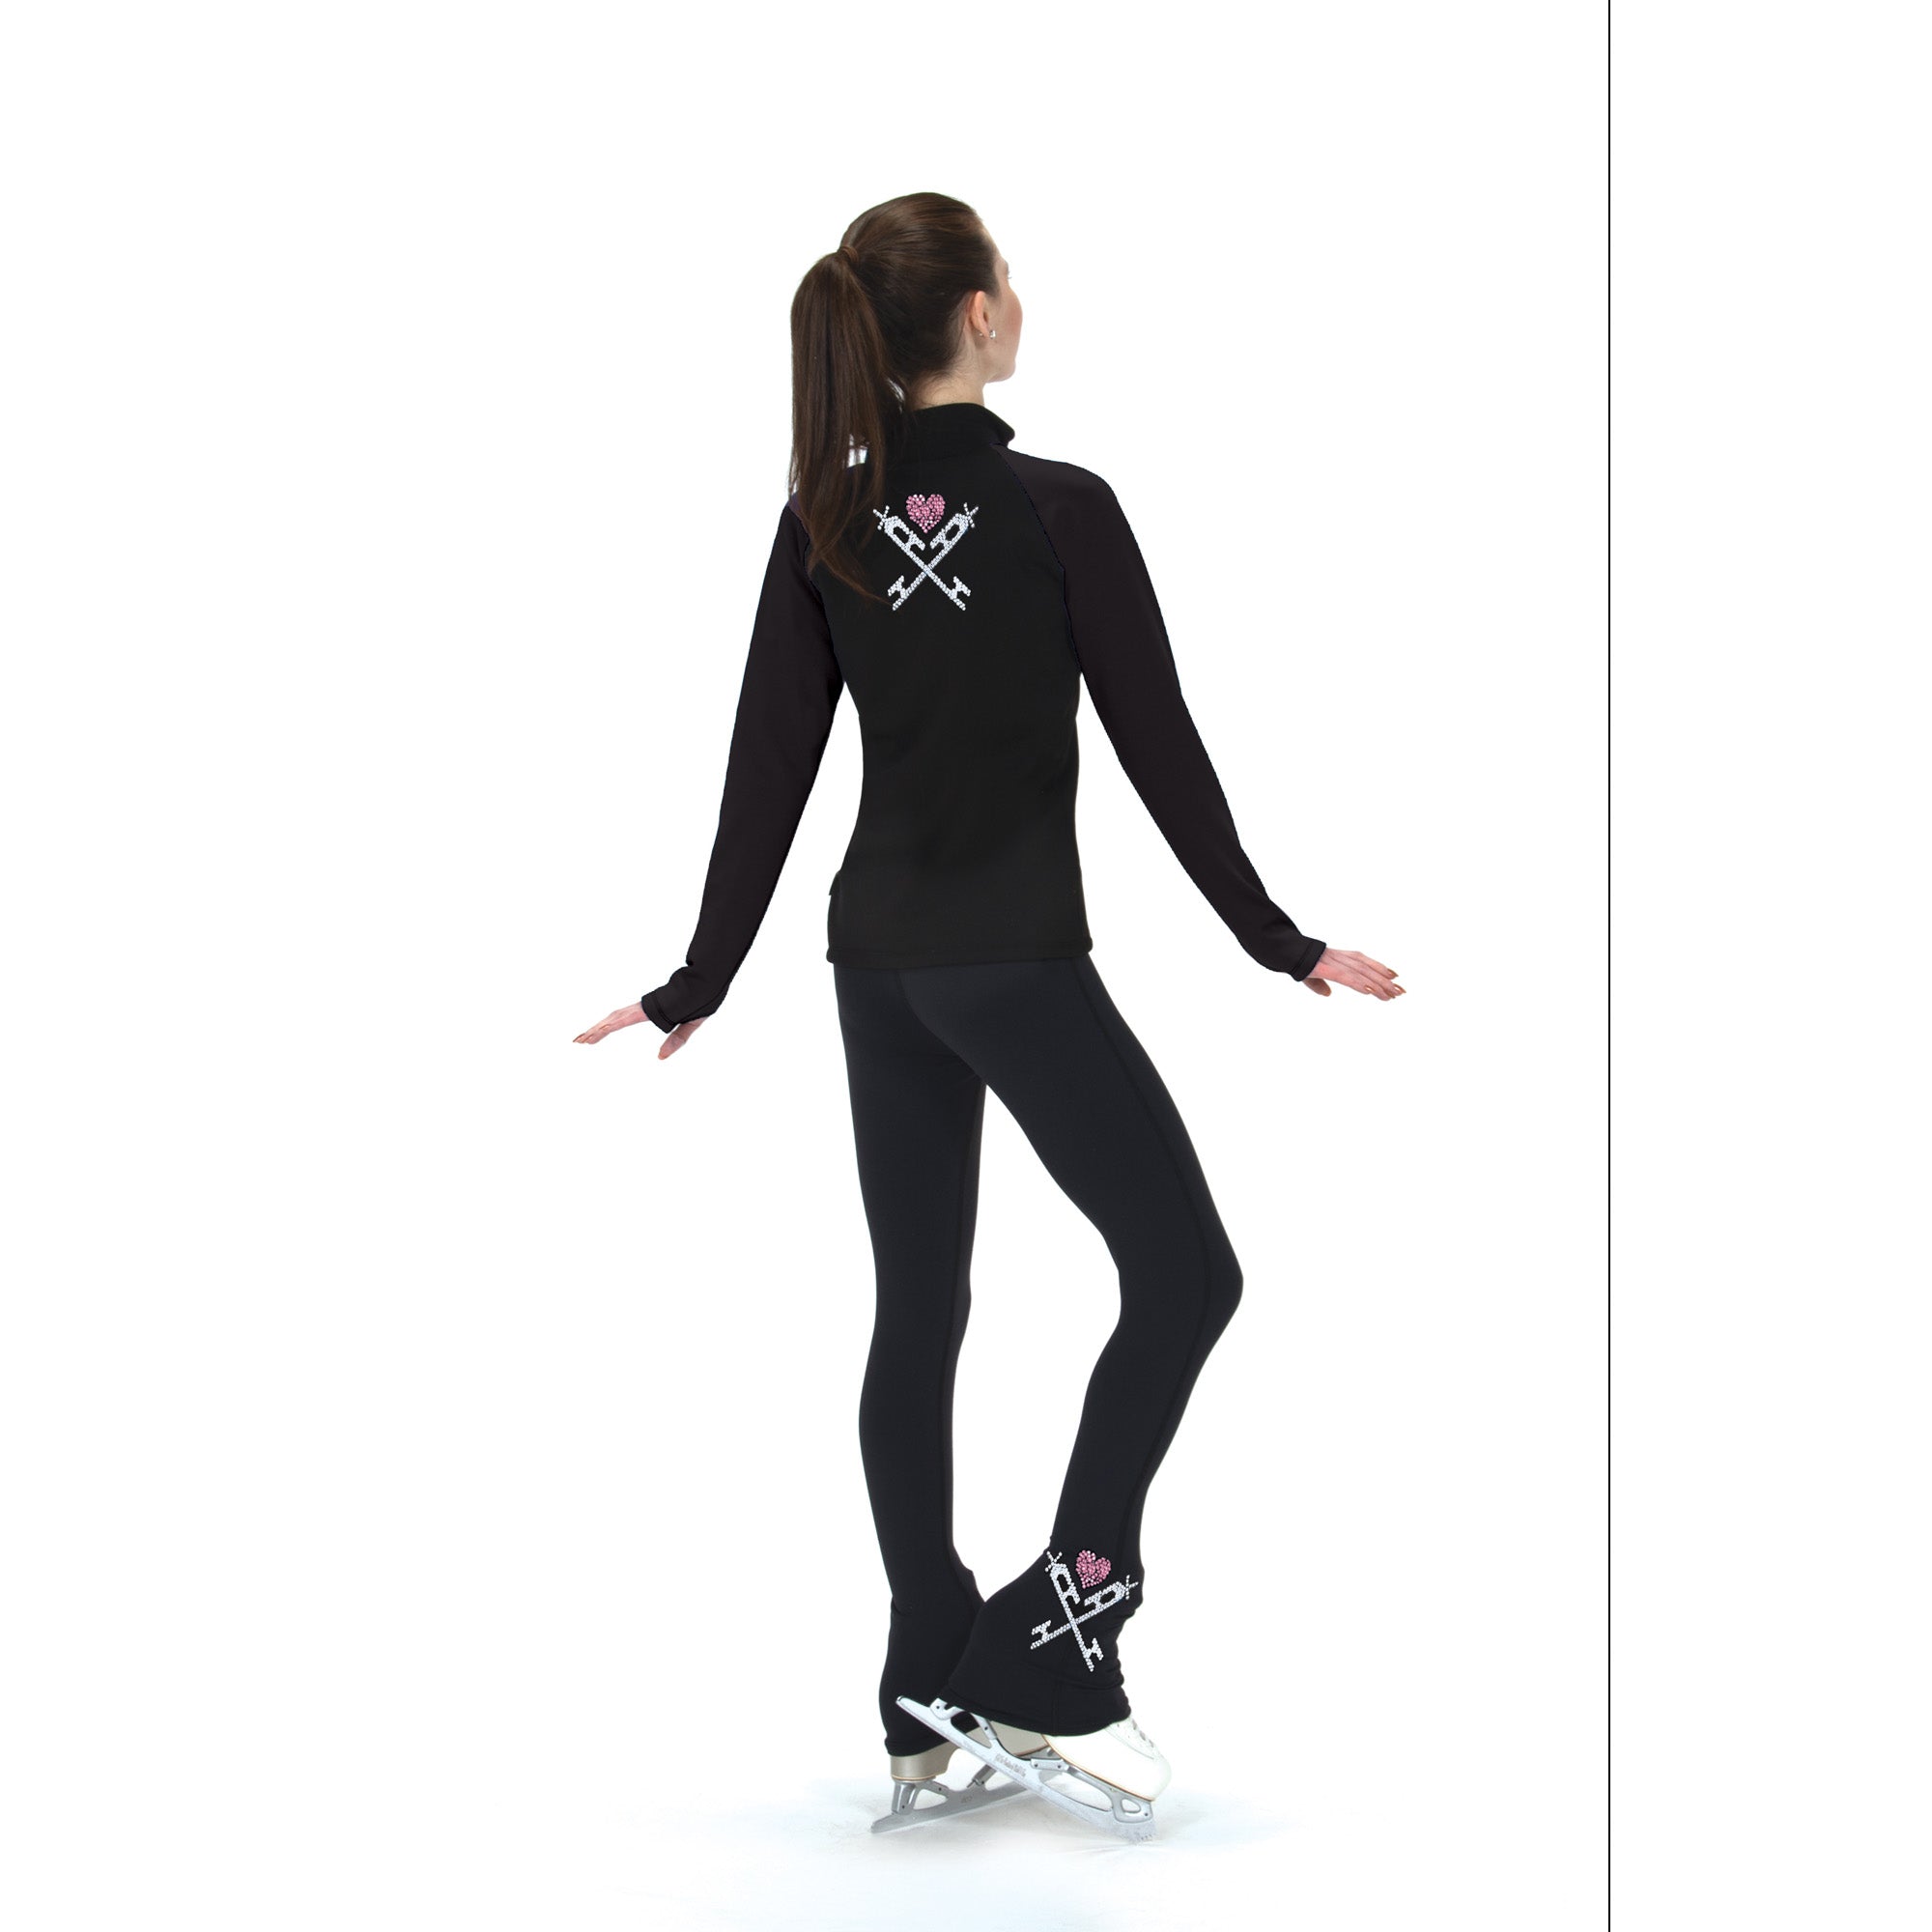 Mondor 6012 Leggings – Figure Skating Boutique